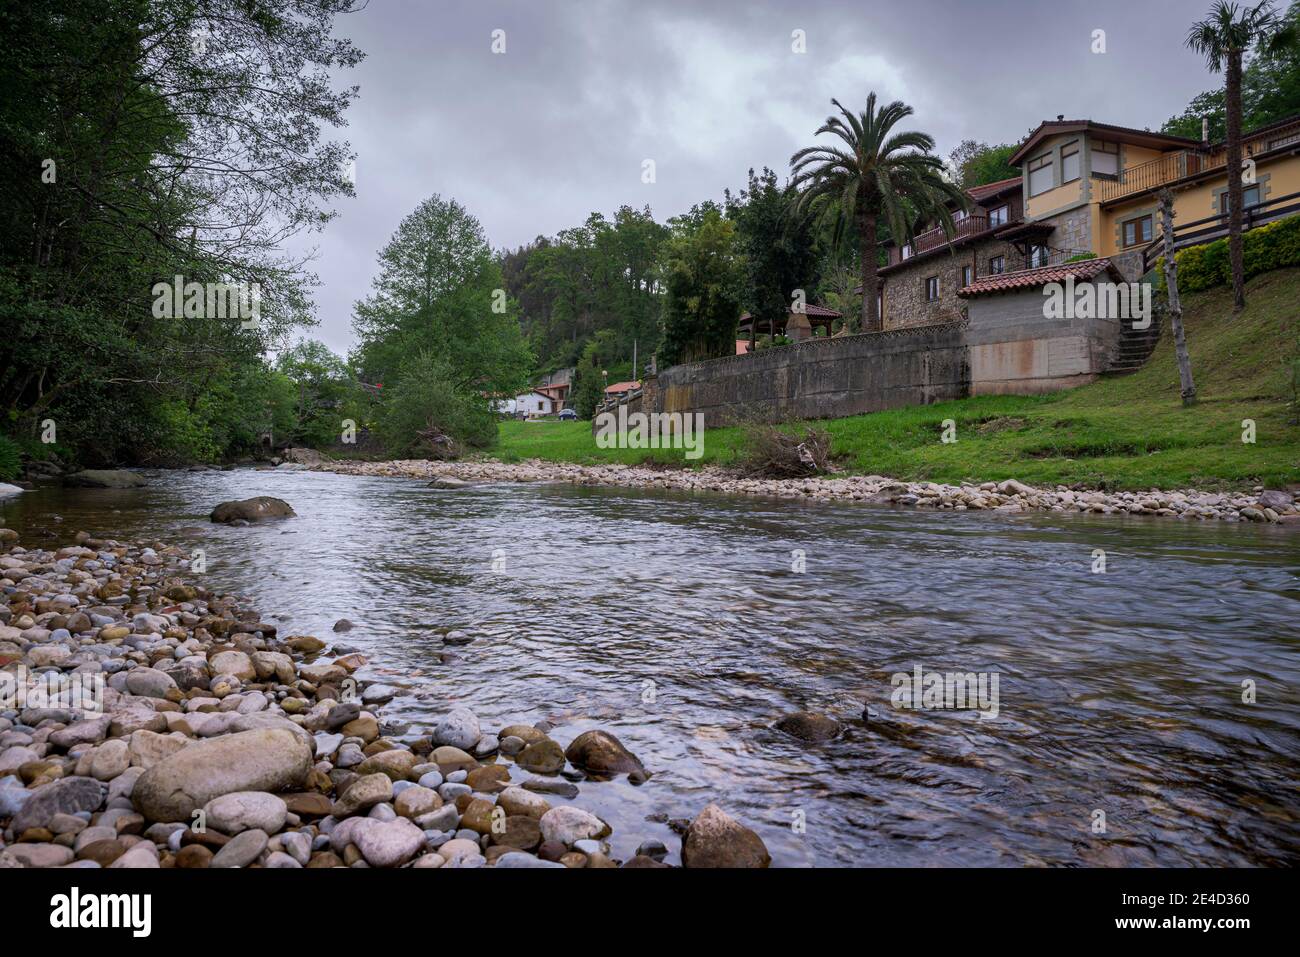 Vistas del río Miera en el pueblo de Lierganes, provincia de Cantabria, España Foto de stock